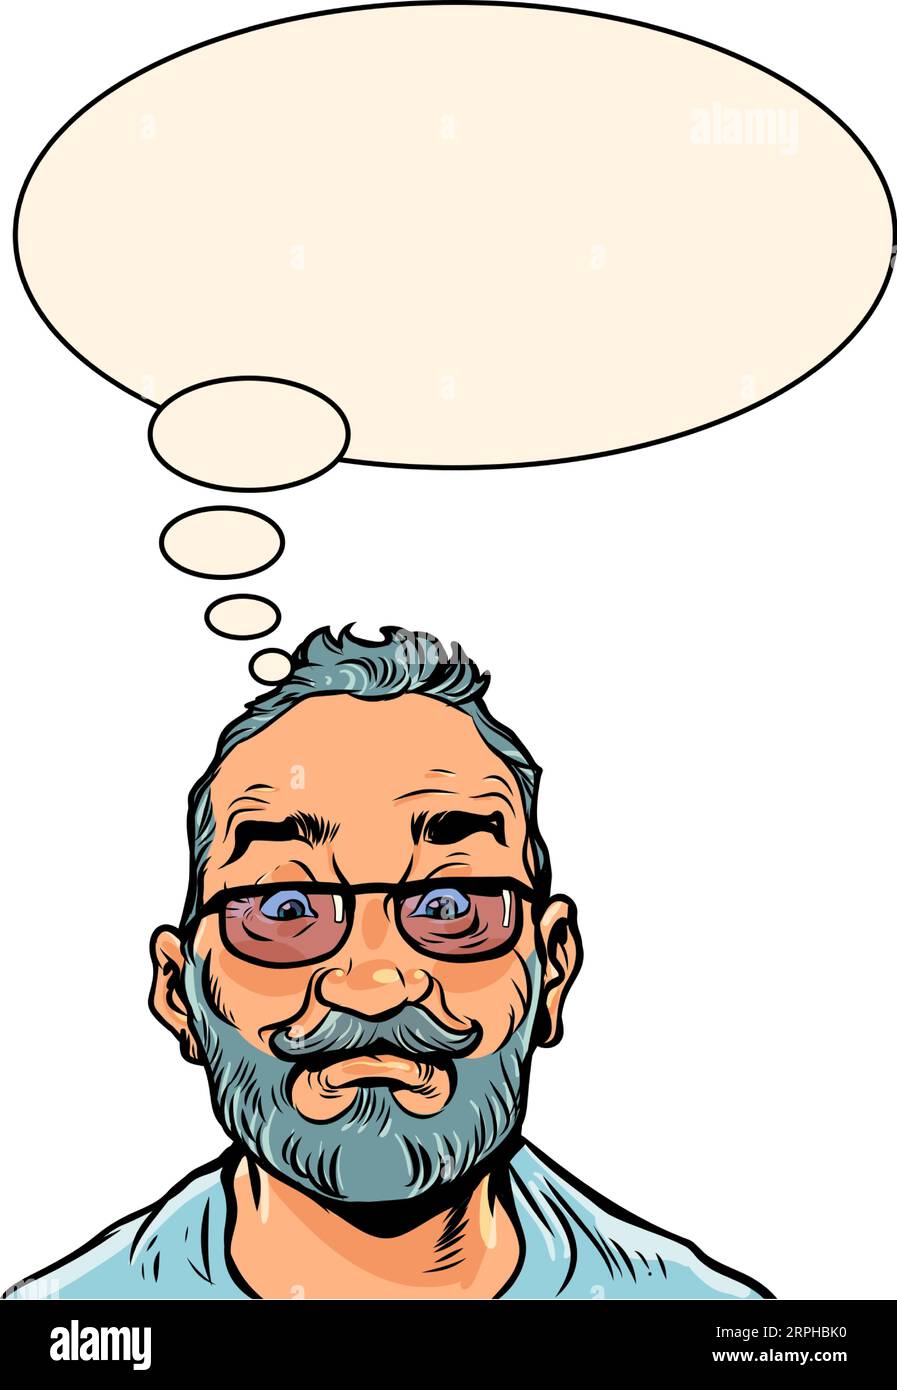 Pensare ai potenziali vantaggi. Il cliente sta pensando di acquistare. Un uomo adulto con la barba negli occhiali sta pensando a qualcosa. Pop Art Illustrazione Vettoriale